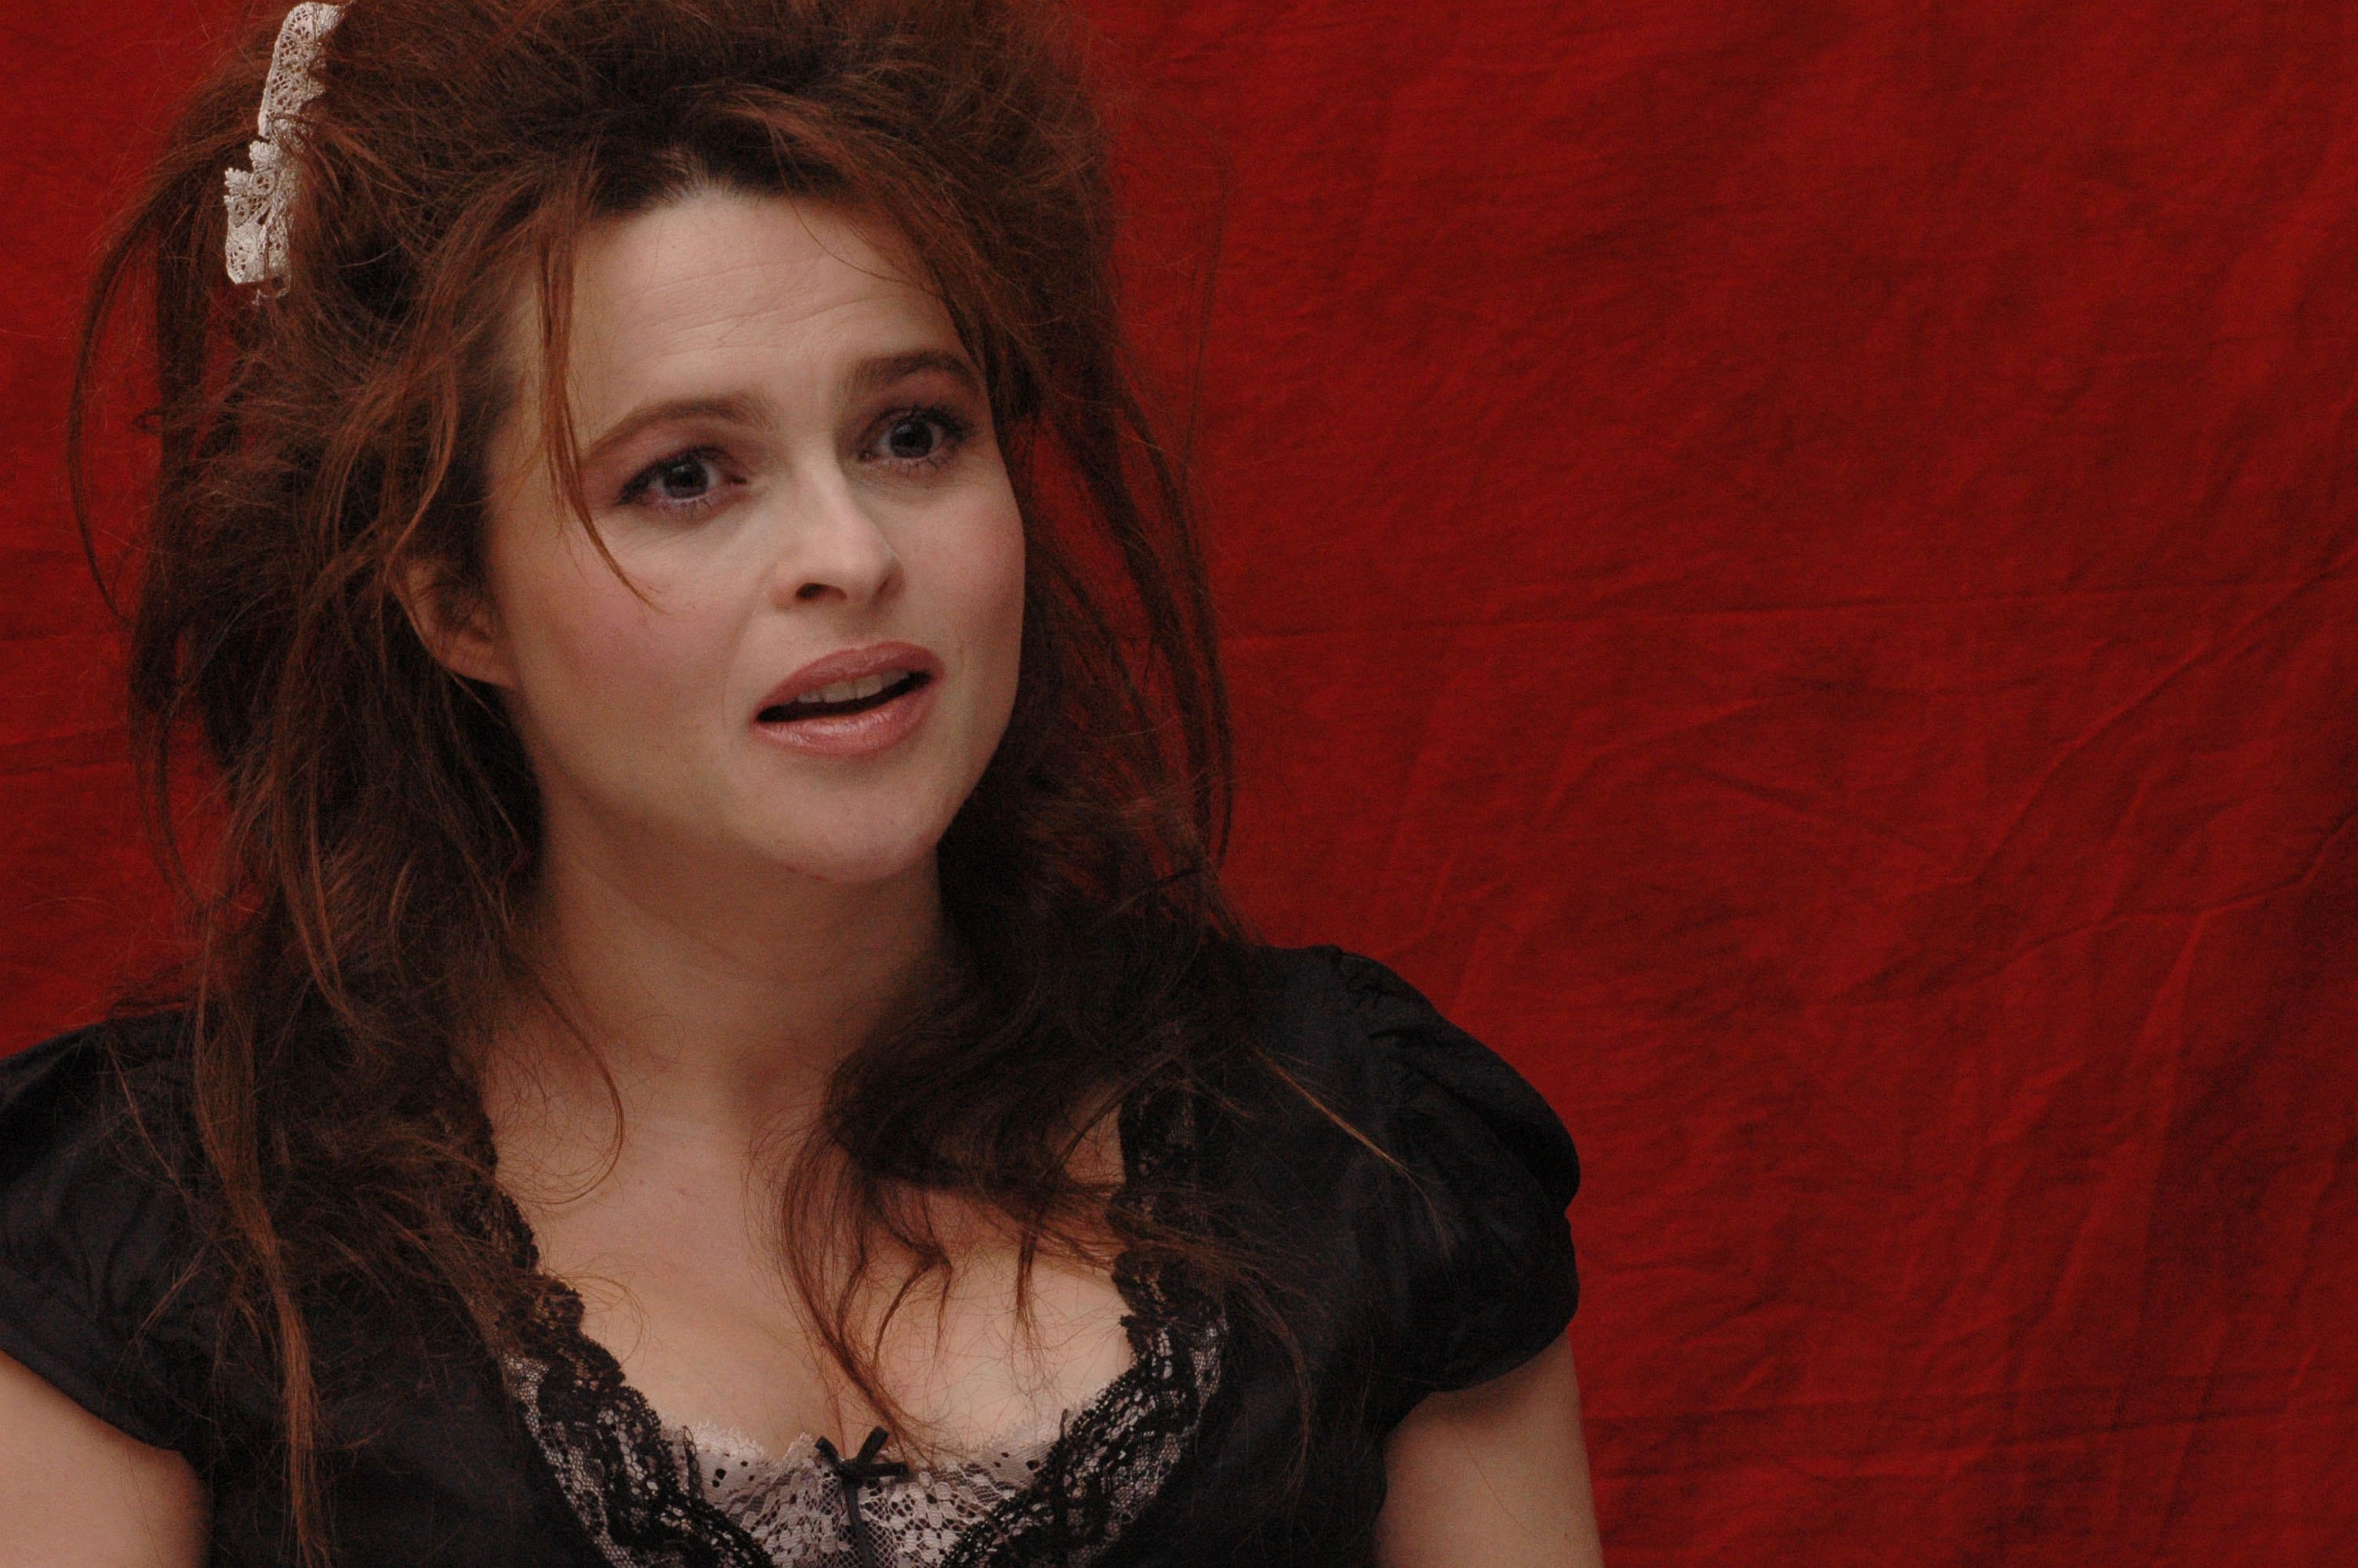 Download mobile wallpaper Celebrity, Helena Bonham Carter for free.